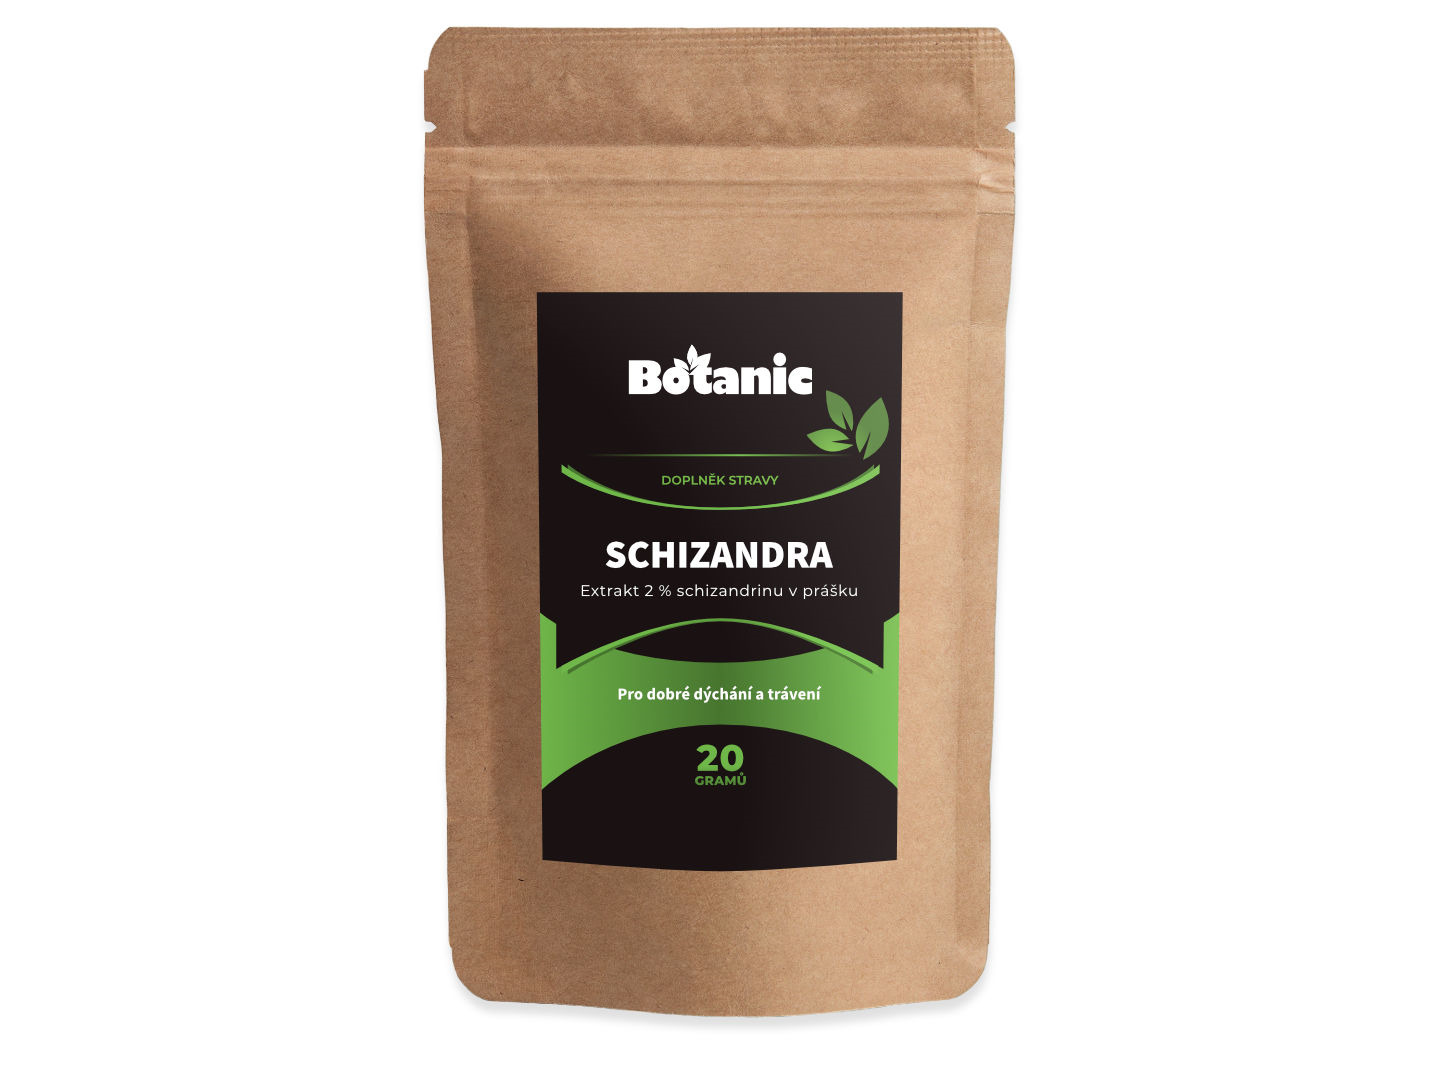 Botanic Schizandra čínská - Extrakt 2 % schizandrinu v prášku 20g